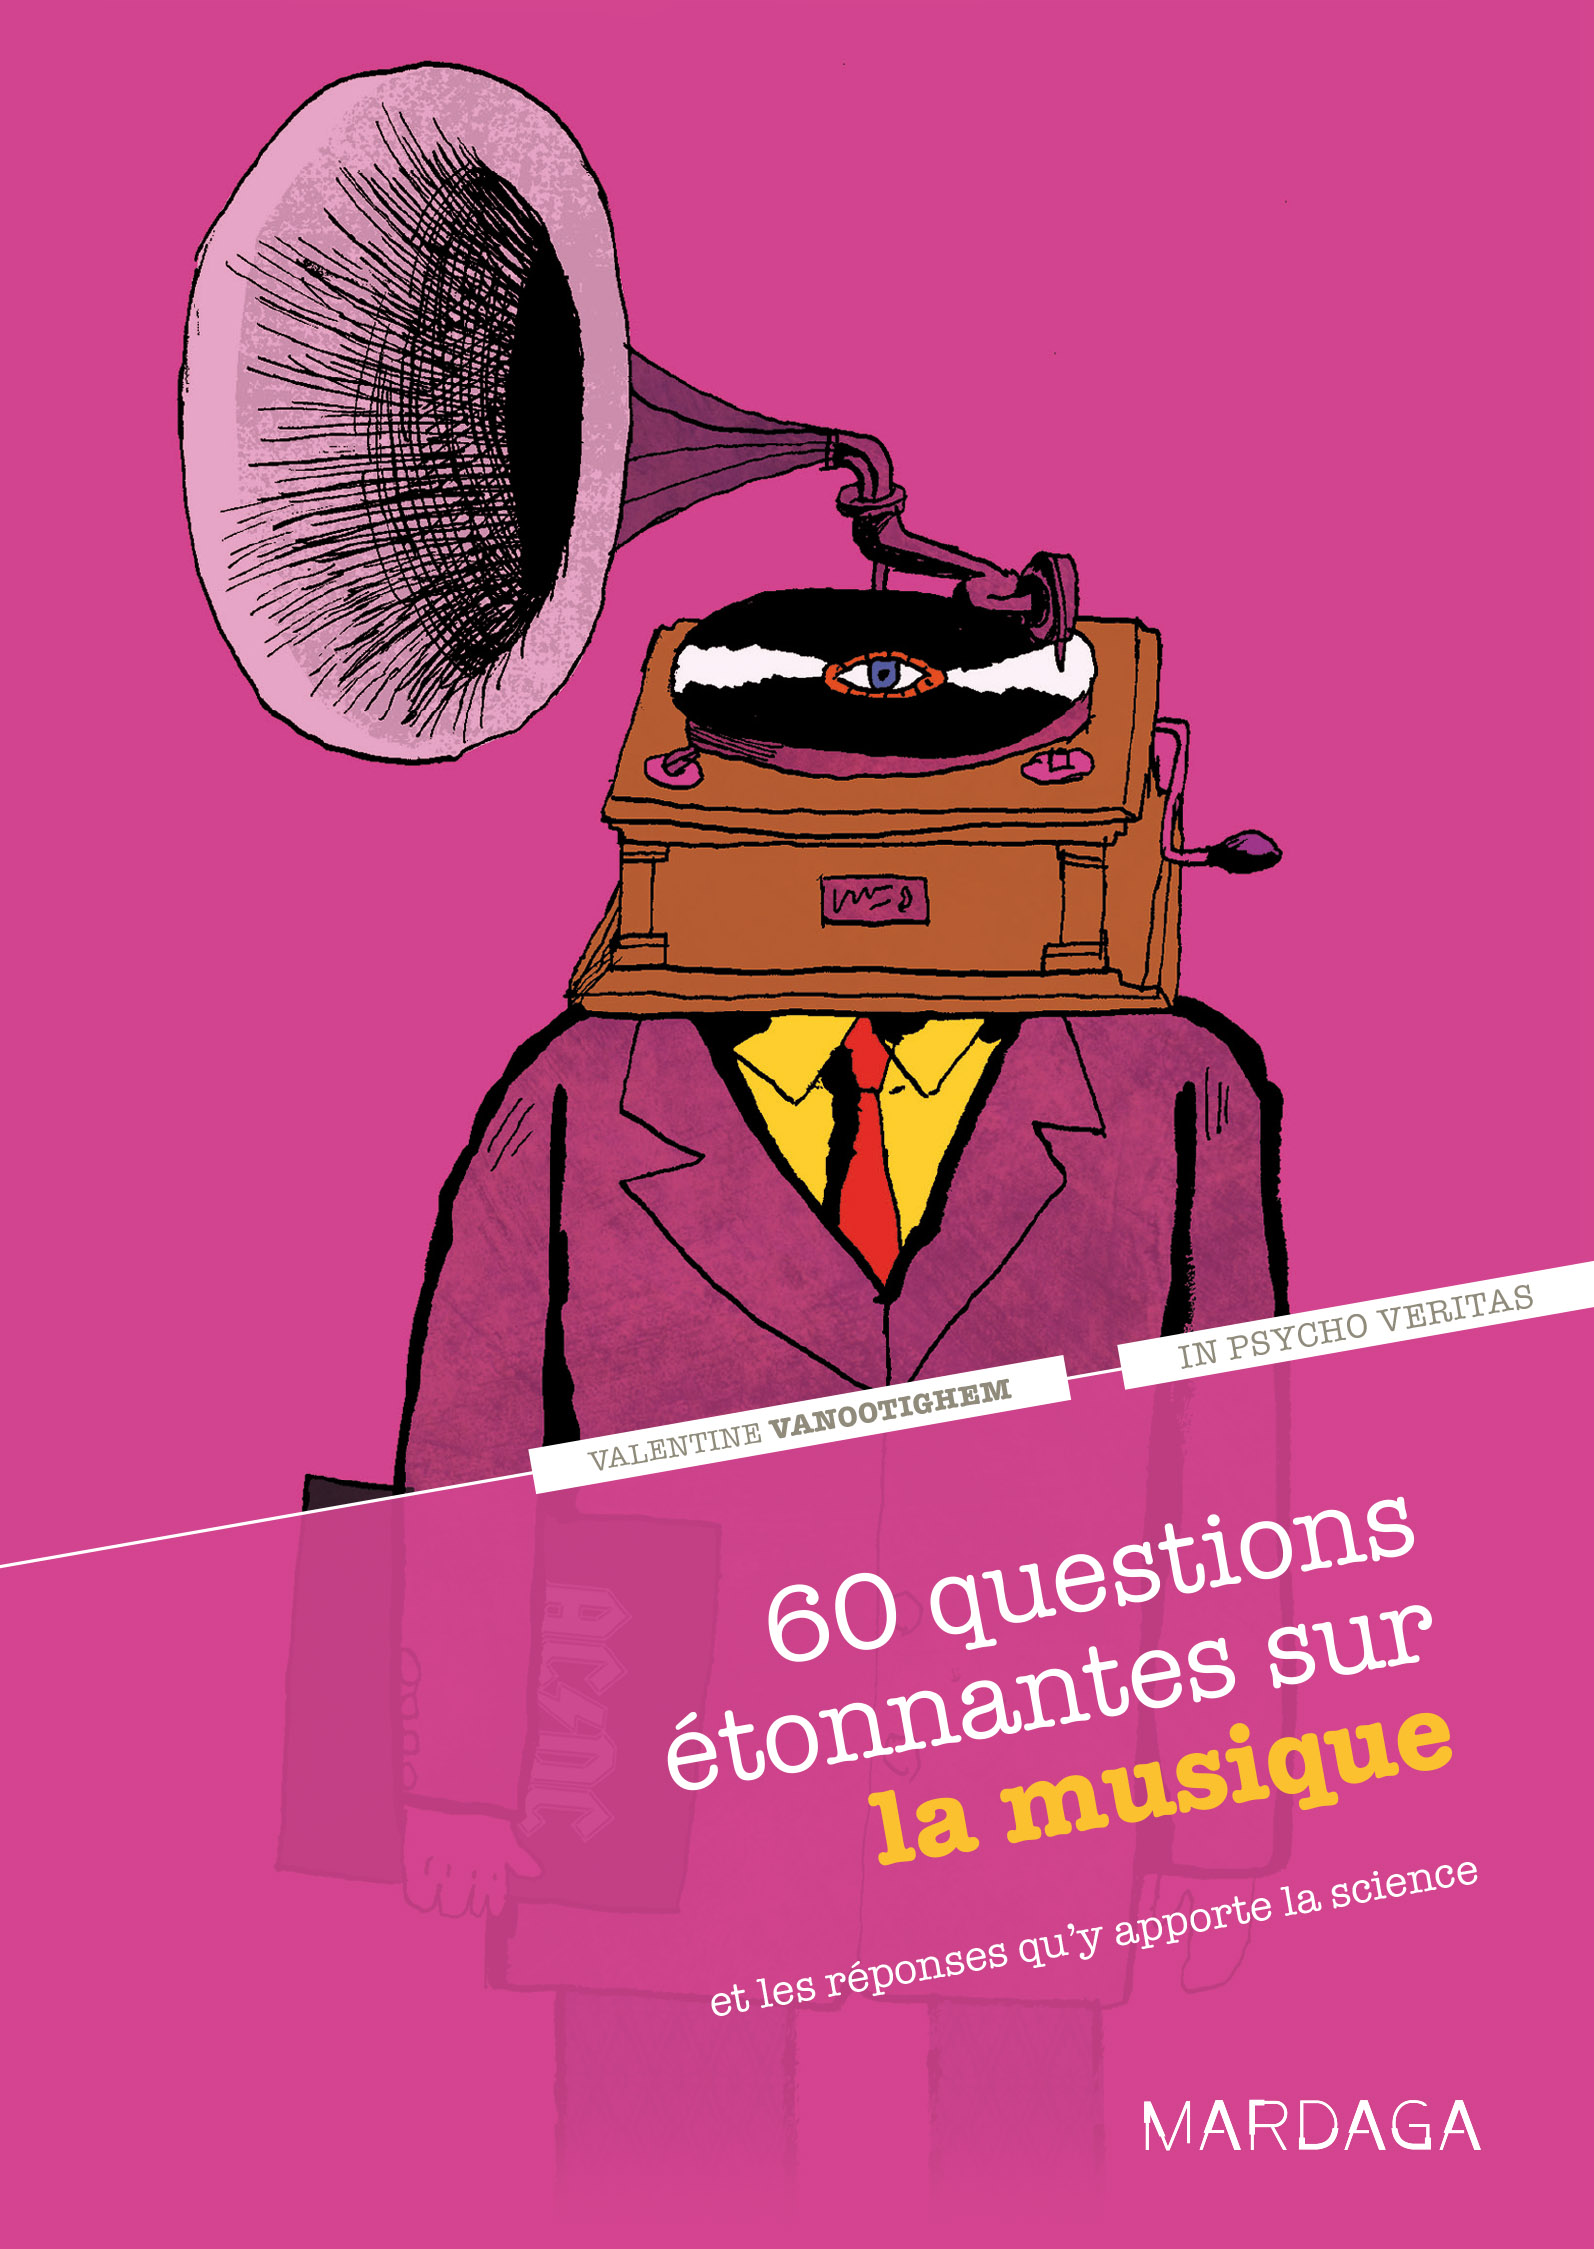 60 questions étonnantes sur la musique, de Valentine Vanootighem